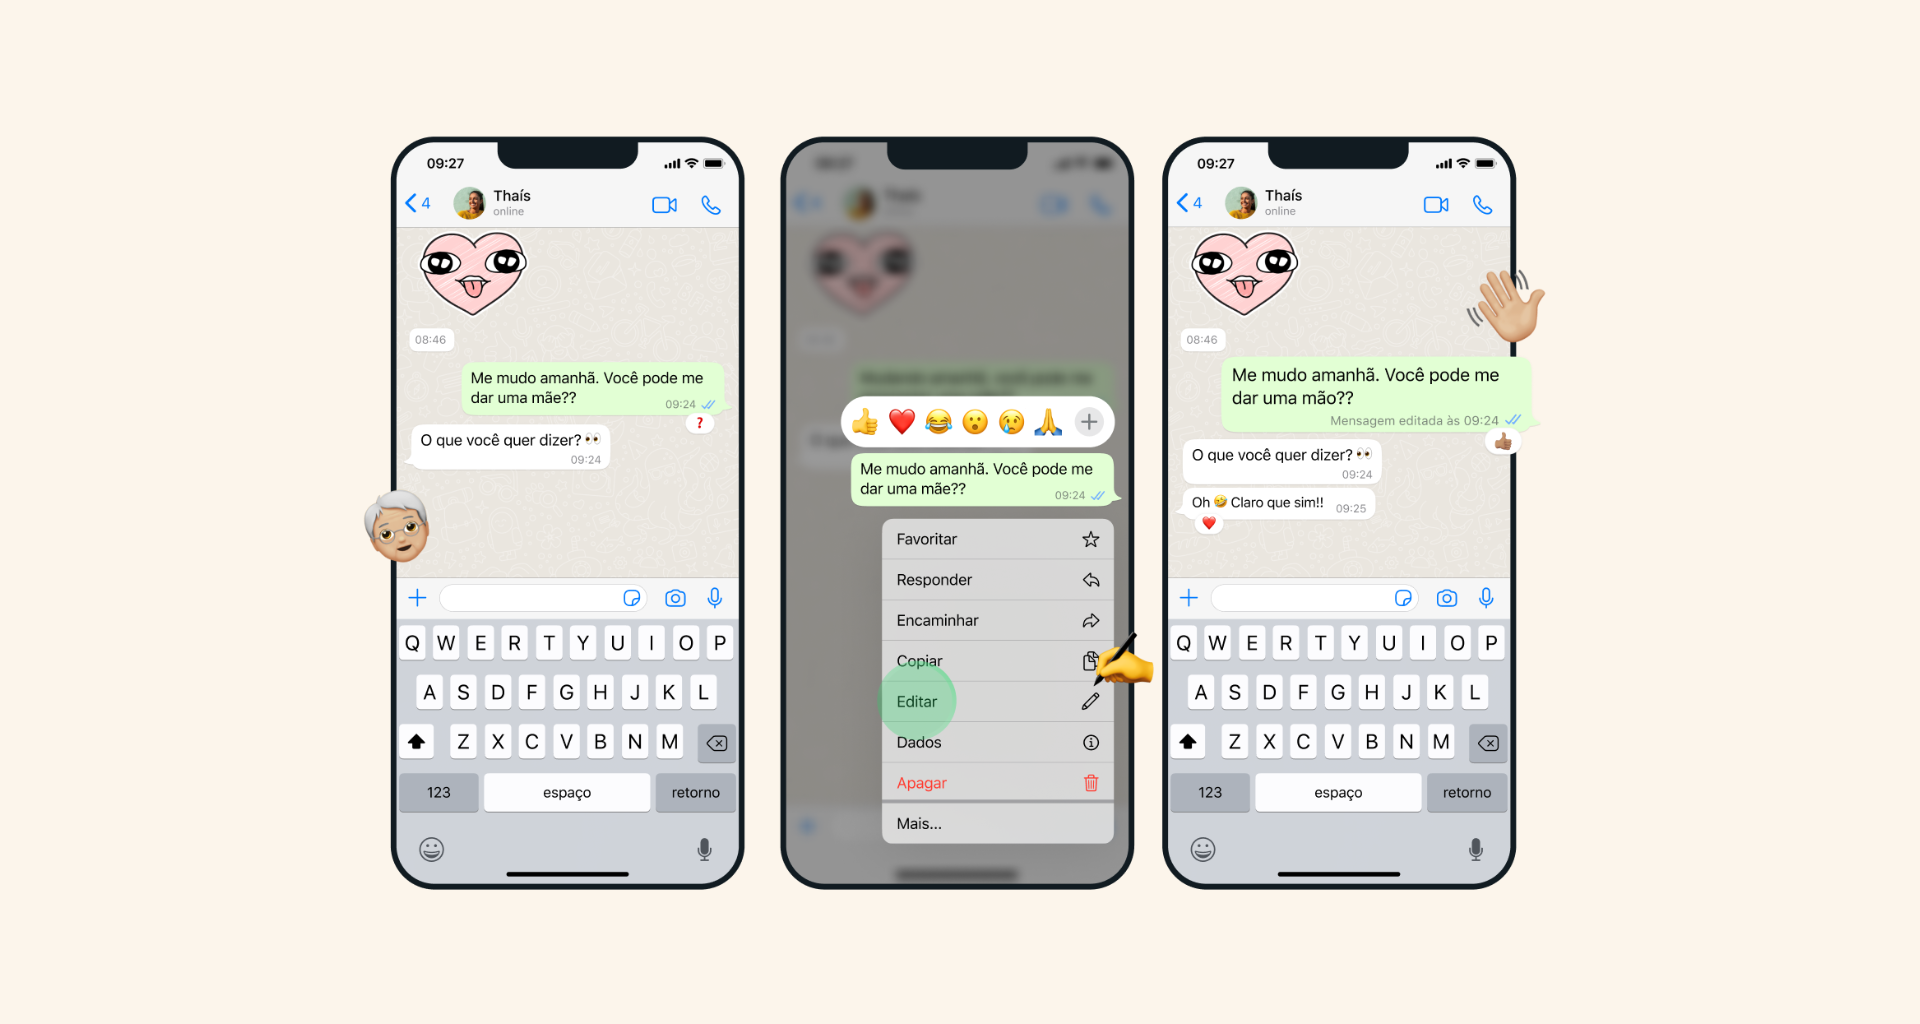 Whatsapp vai deixar você editar mensagens, veja como. Aplicativo da meta confirmou que novidade está chegando "nas próximas semanas" e estará disponível para conversas no privado e em grupos